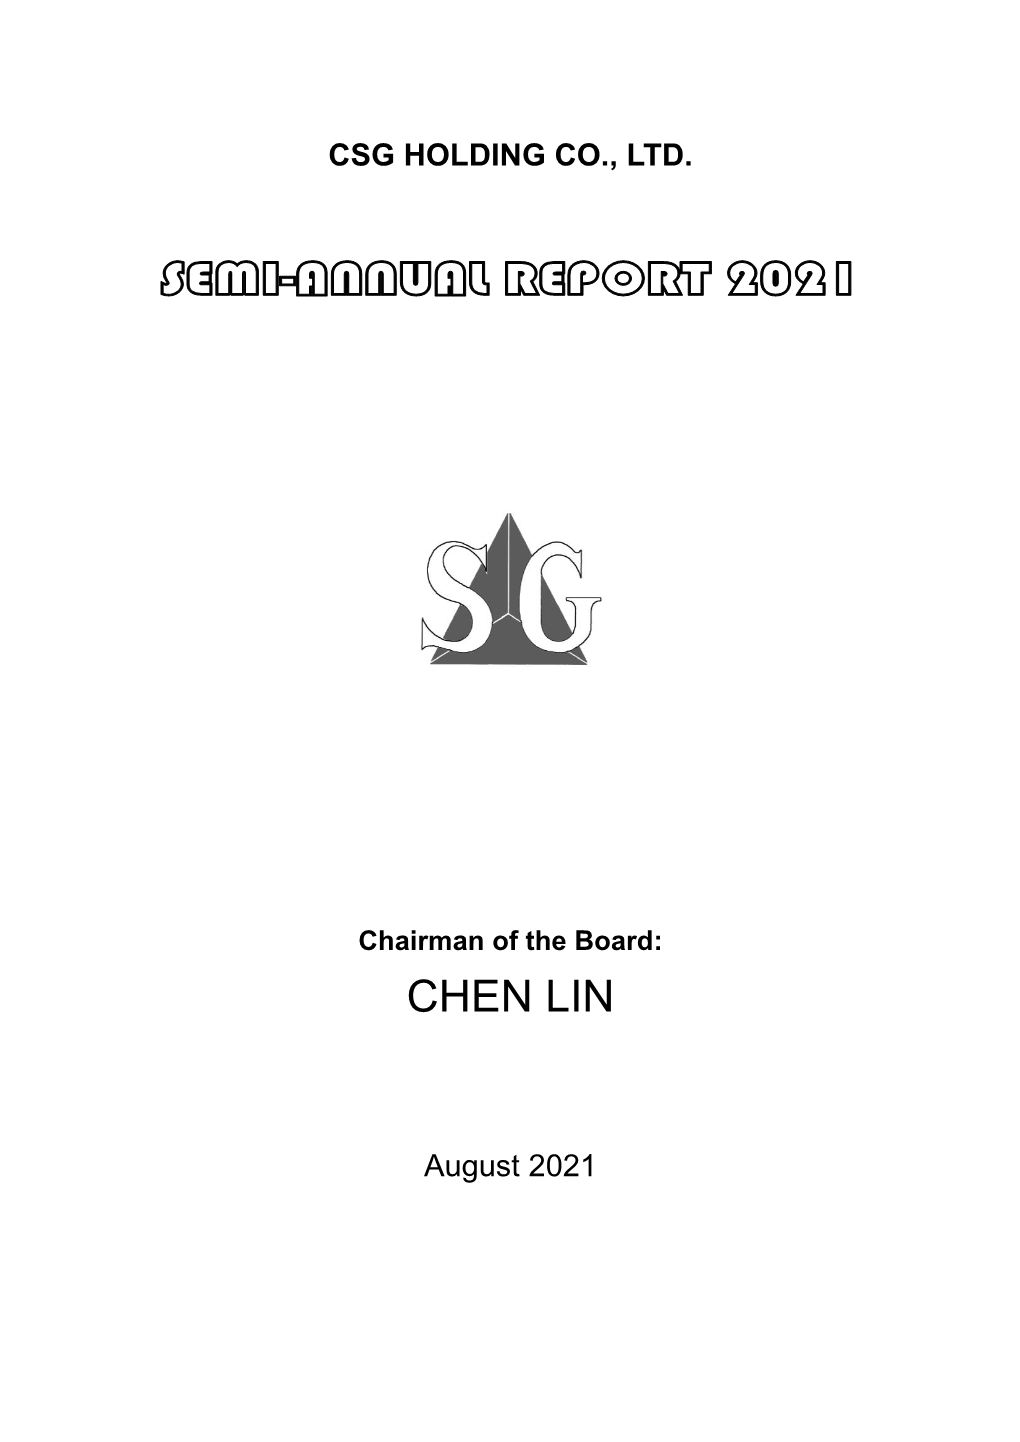 Semi-Annual Report 2021